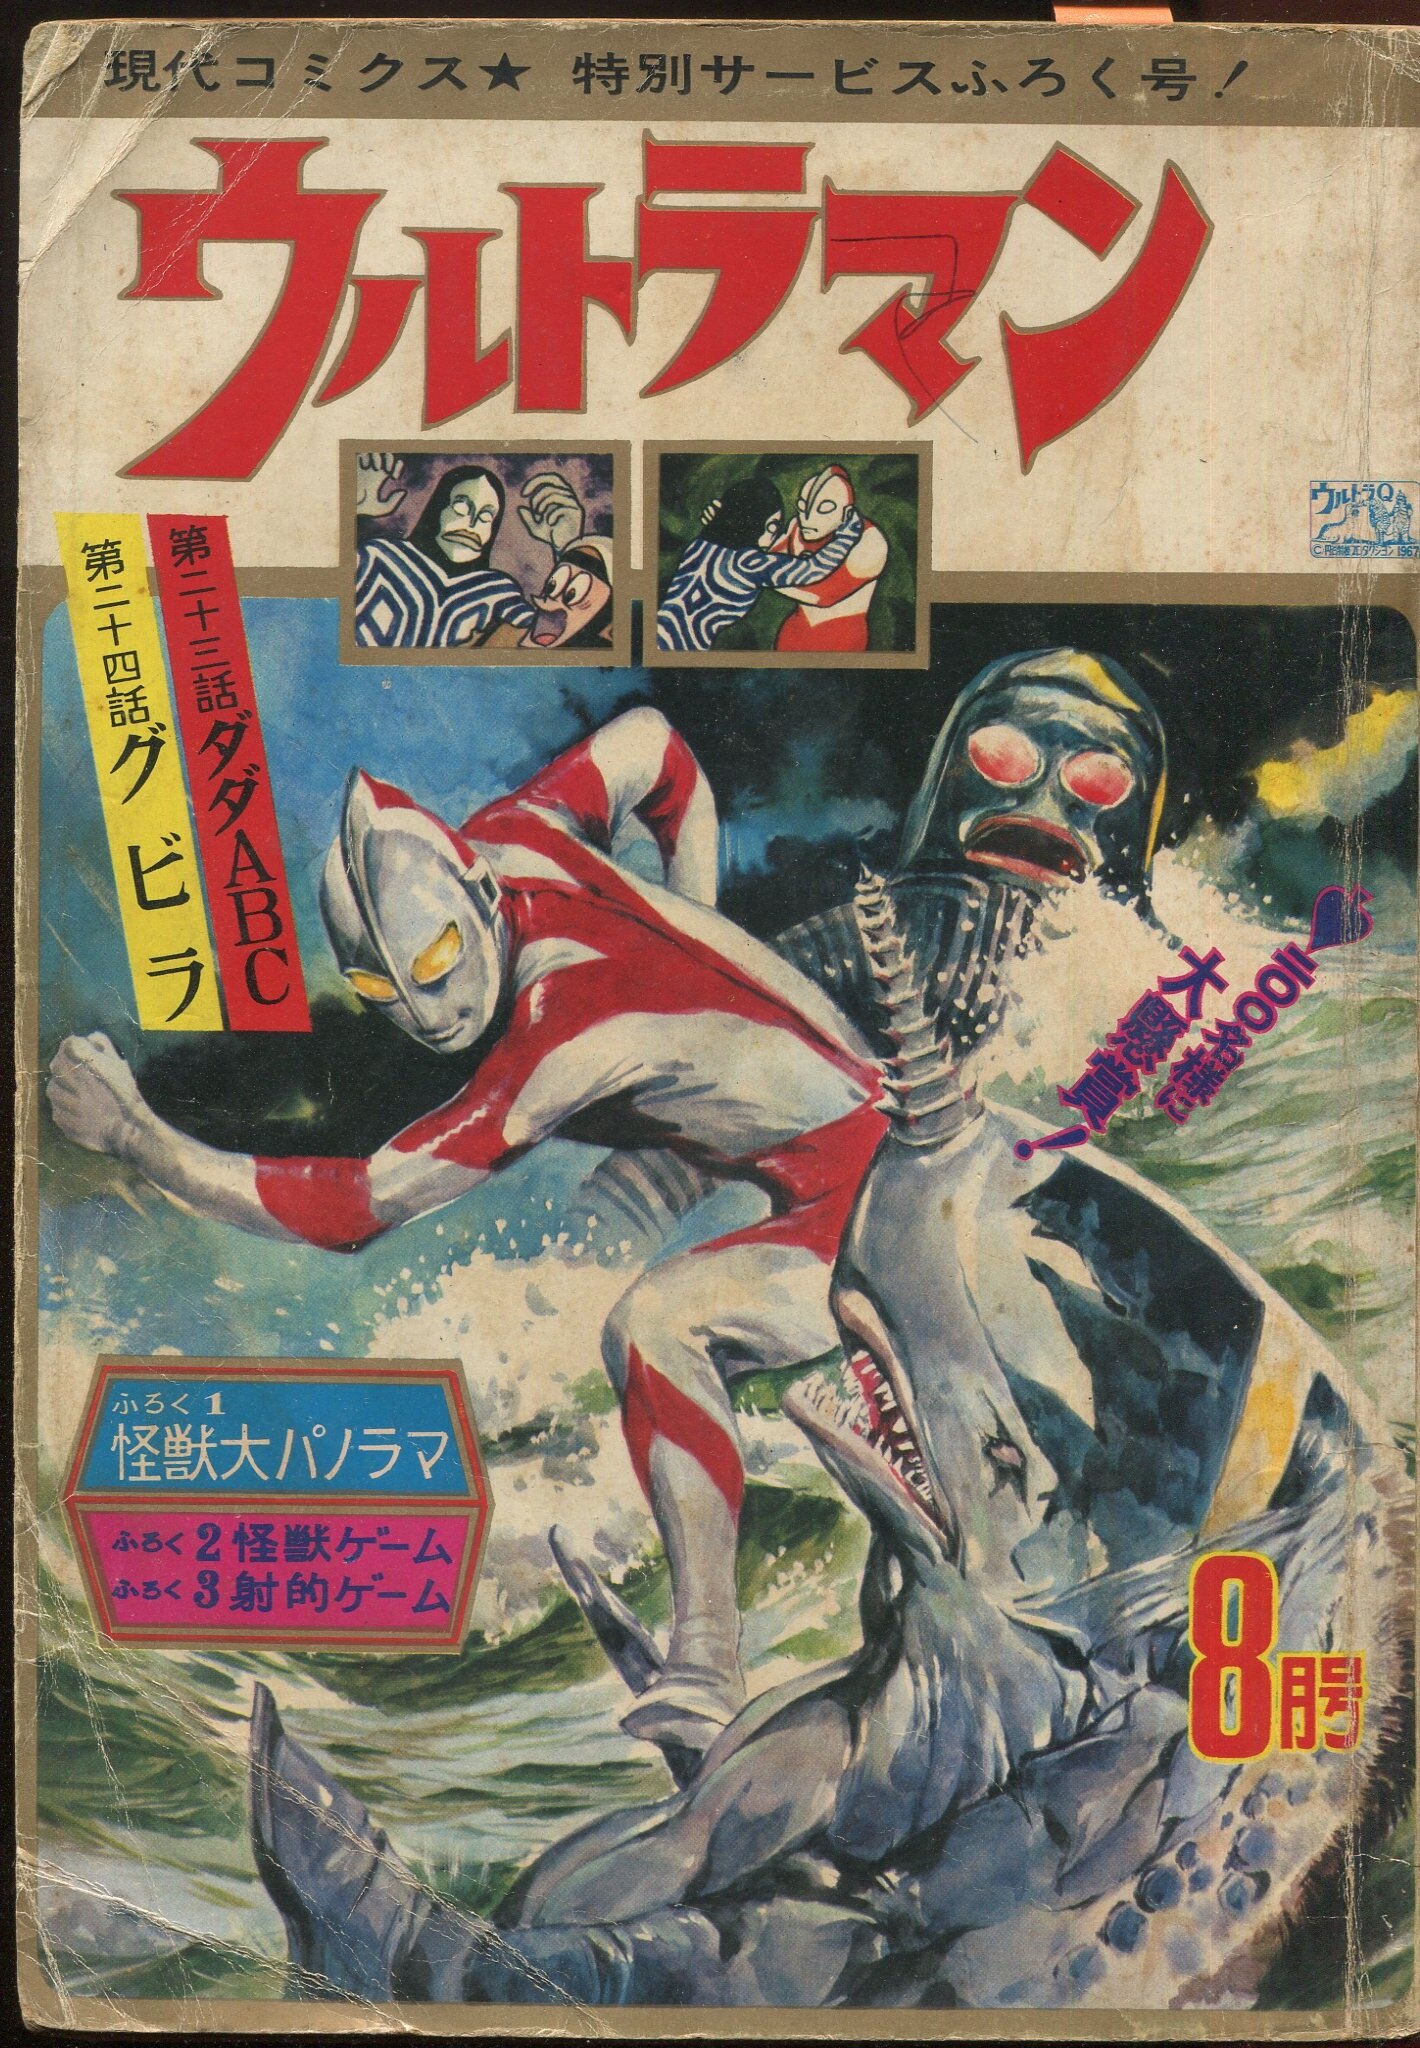 ウルトラマン、昭和レトロ 初版物1967 現代コミック